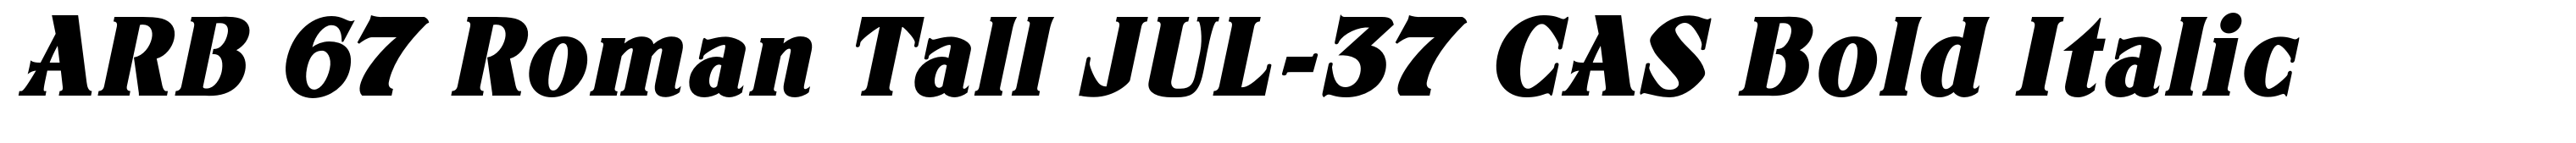 ARB 67 Roman Tall JUL-37 CAS Bold Italic